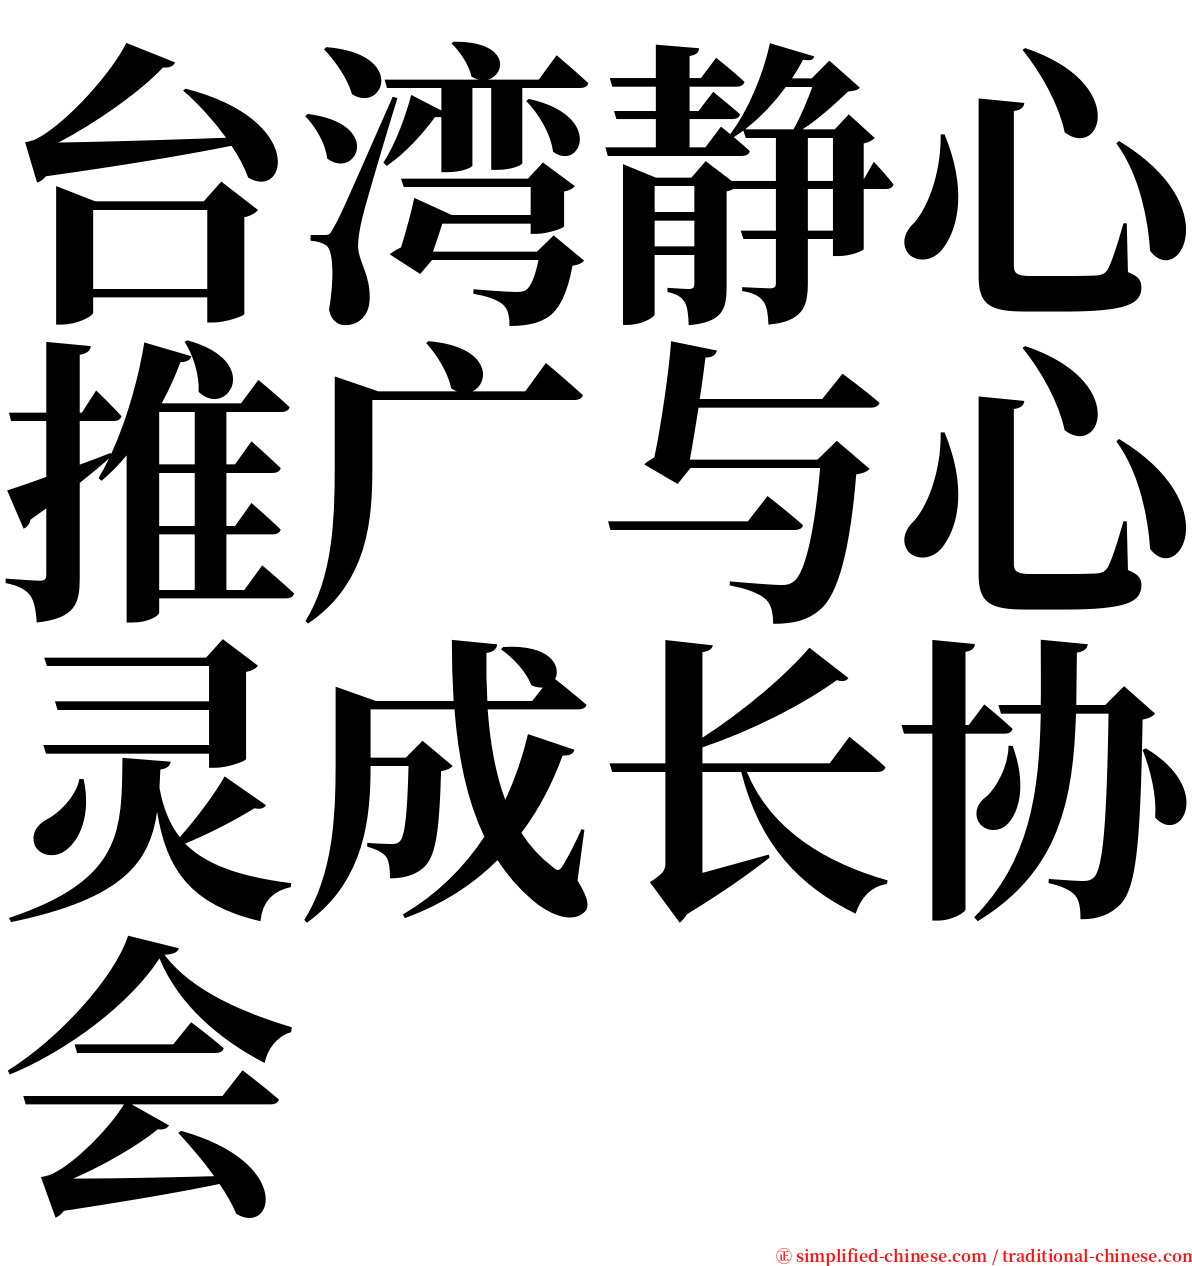 台湾静心推广与心灵成长协会 serif font